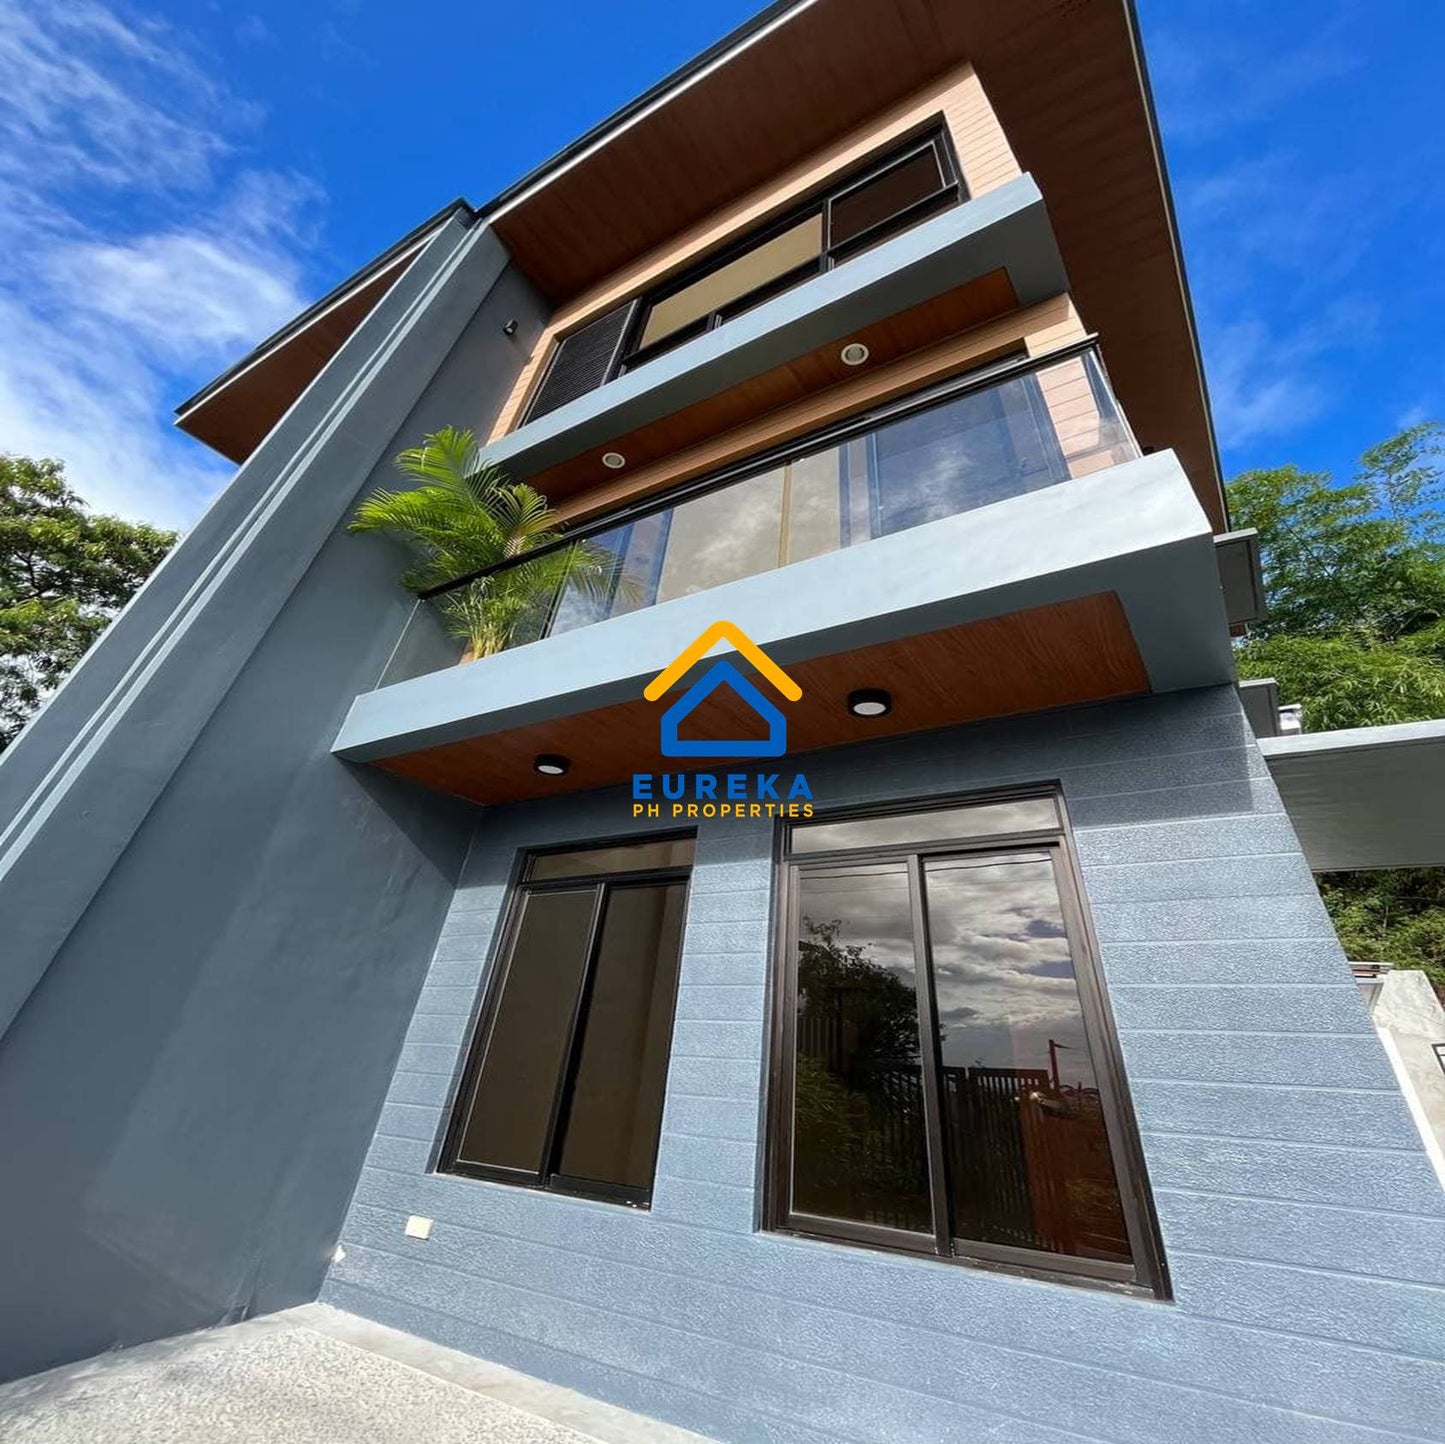 Brand New RFO Modern Duplex Unit in Monteverde Royale